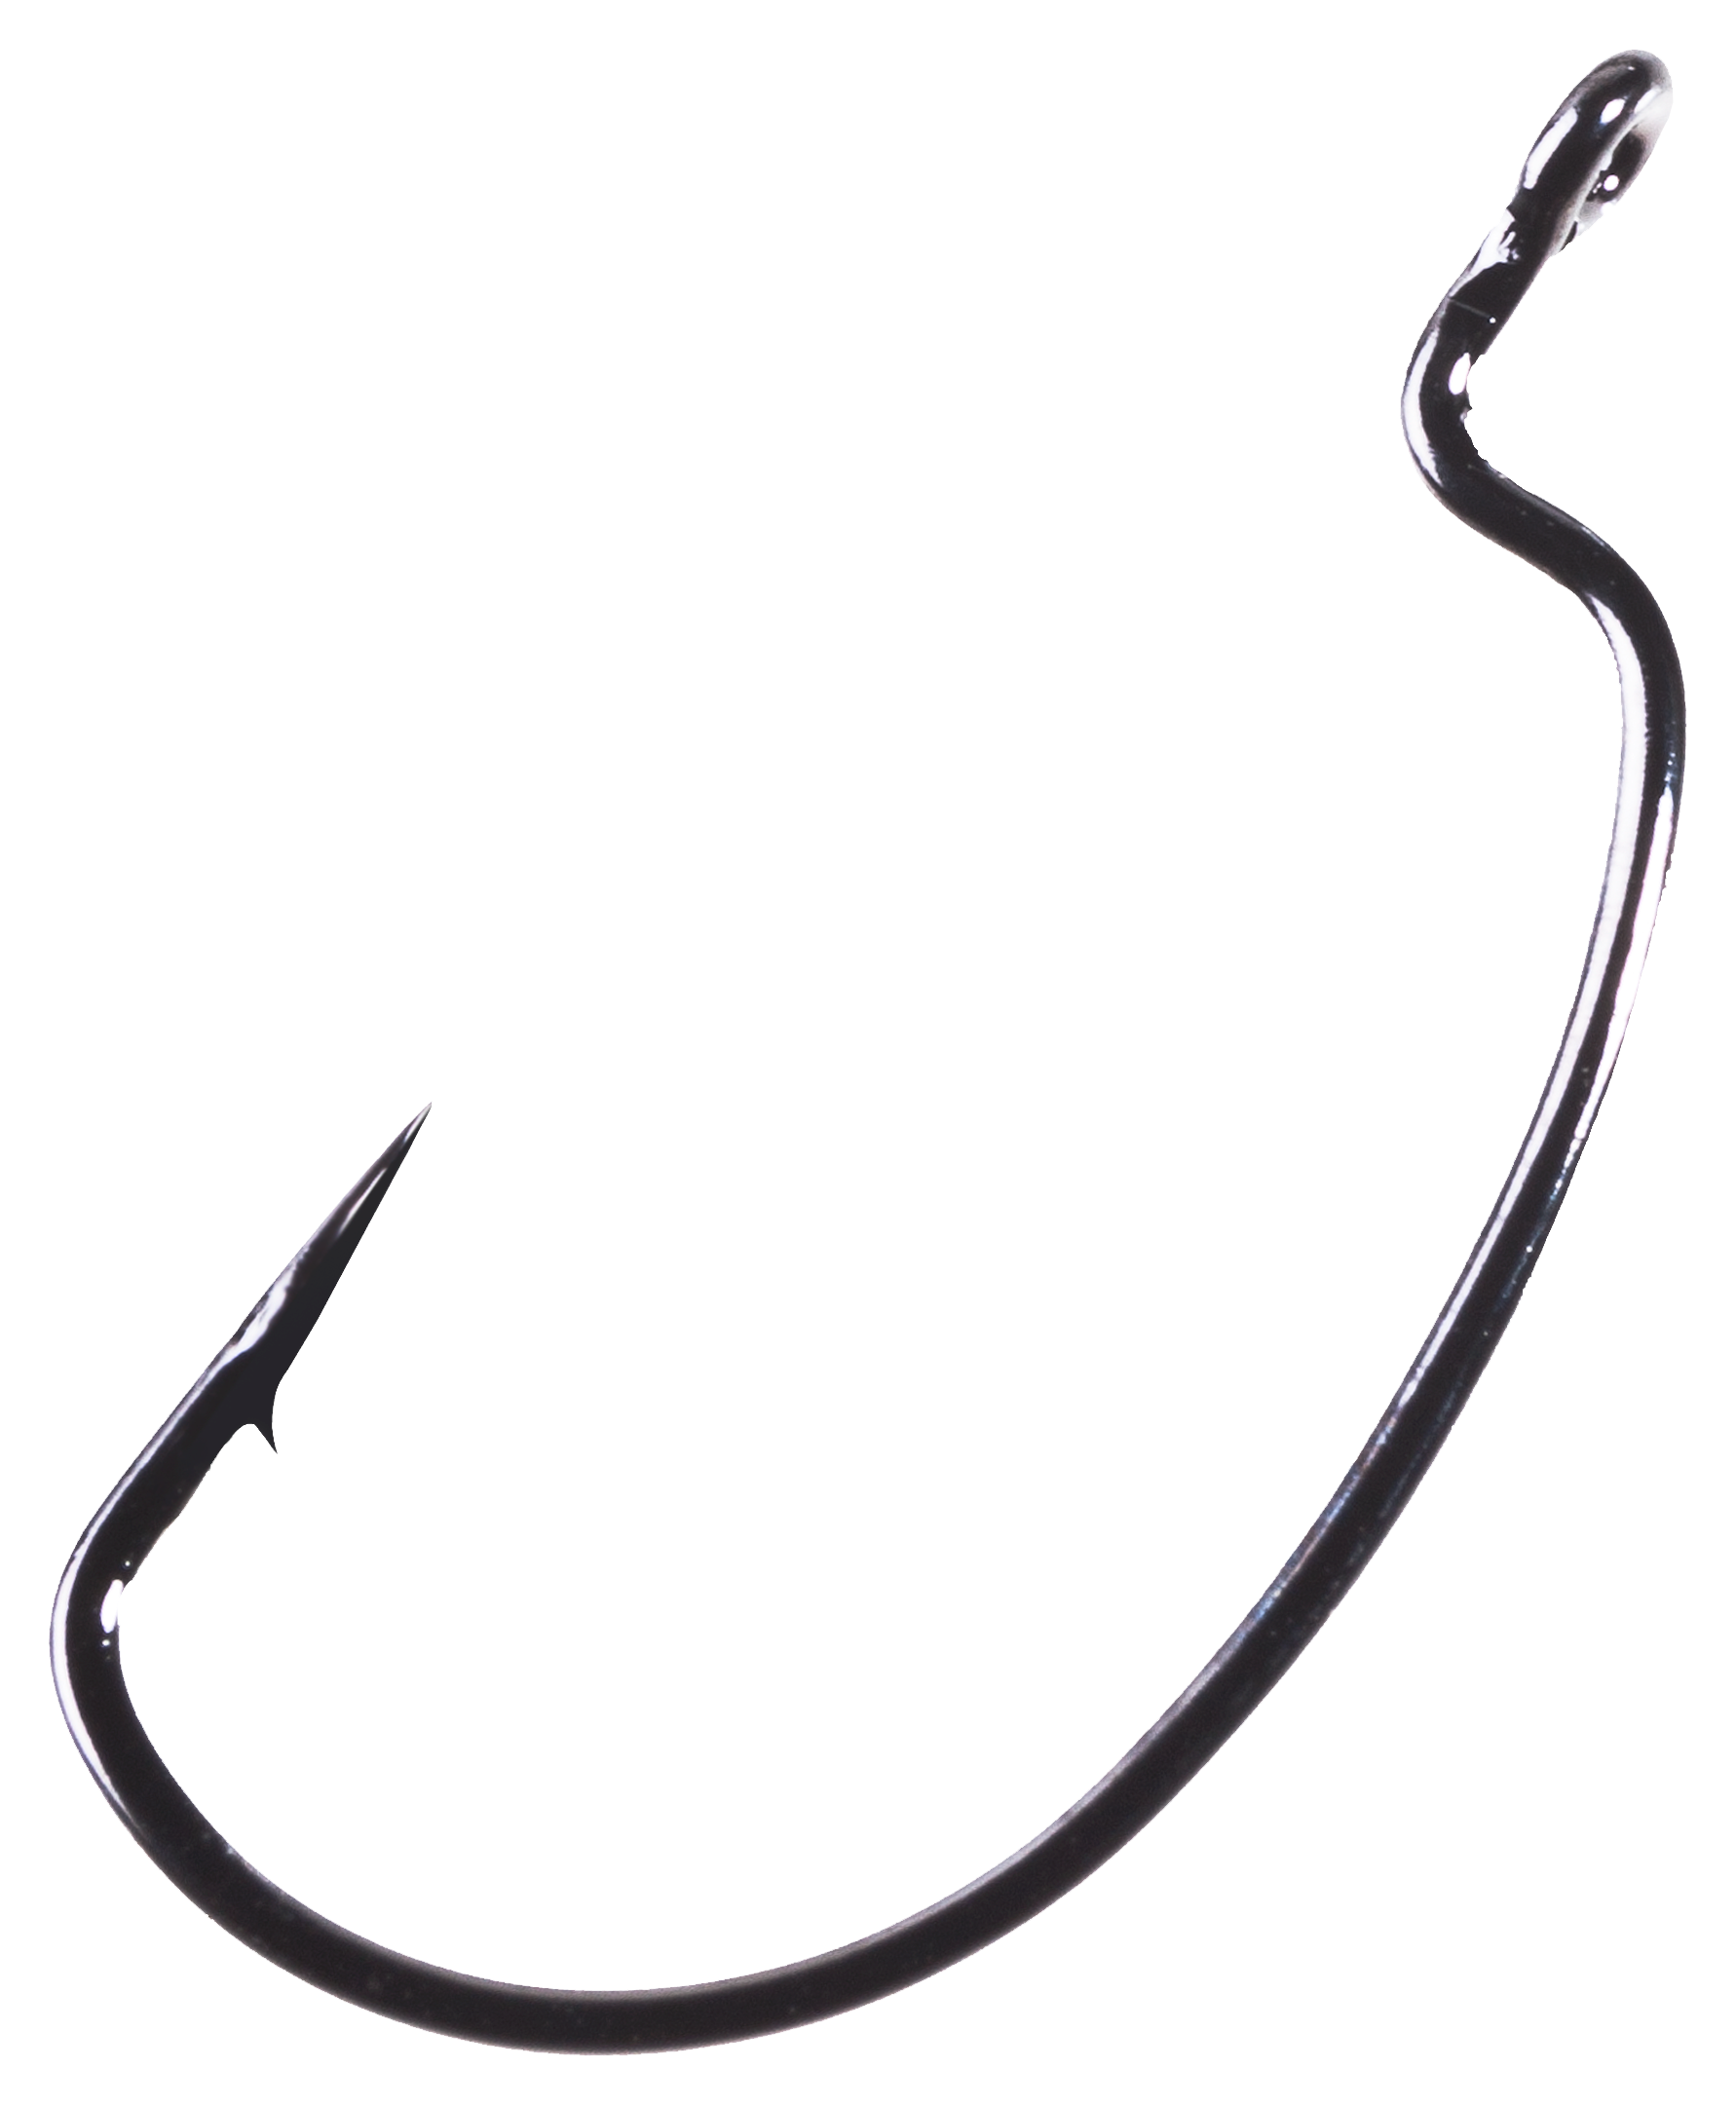 Owner Rig 'N Bass Hooks - Models 5137/5337